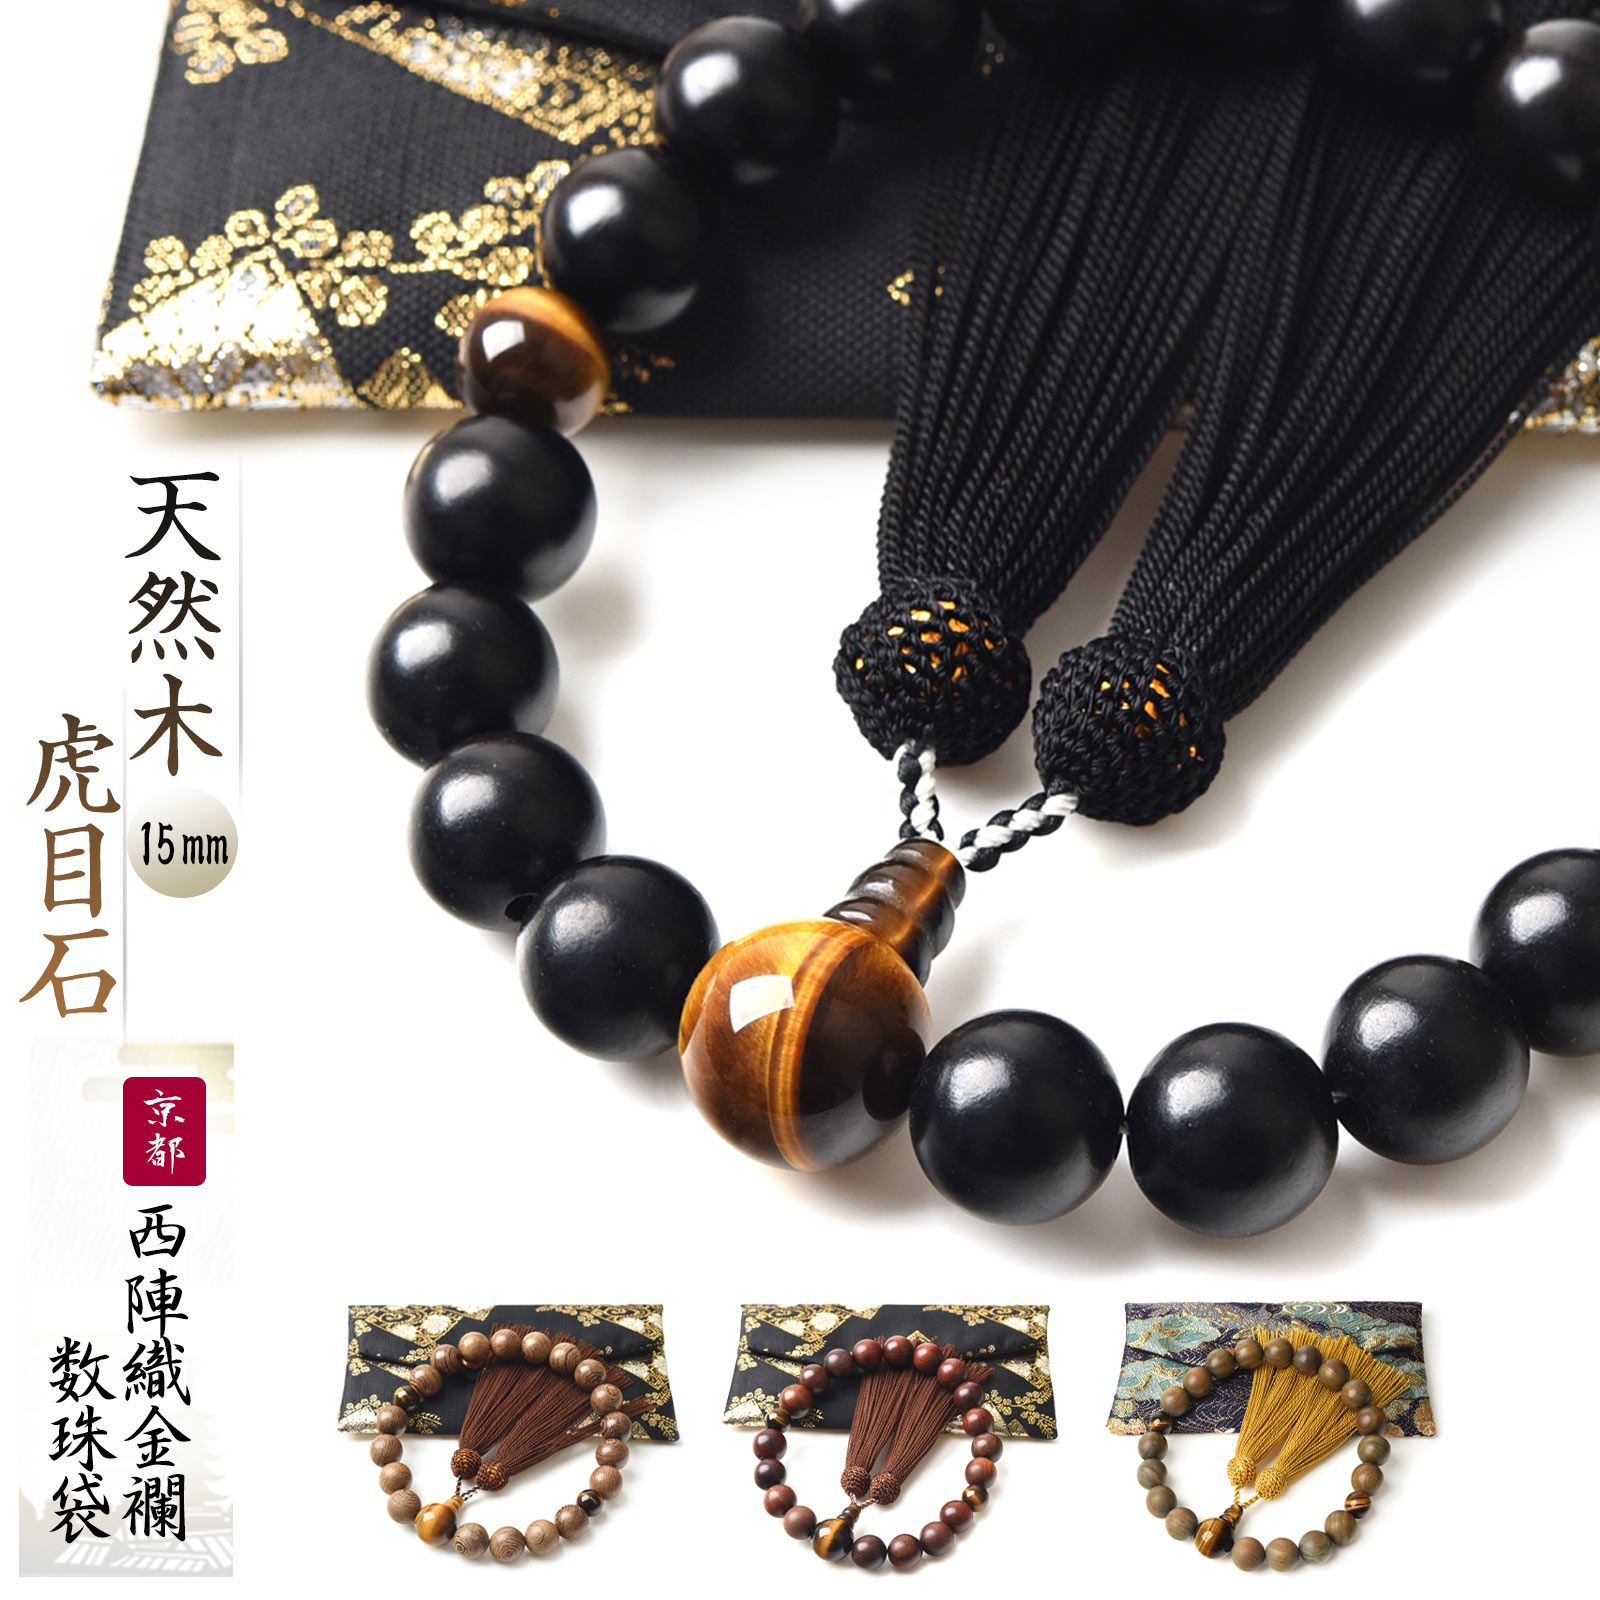 京都からの発送、天然素材使用し職人丁寧に作った数珠で、すべての宗派で使えます。  数珠 男性用 15mm 選べる 天然木 虎目石 数珠入れ 特典付 念珠 天然石 送料無料 juzu02